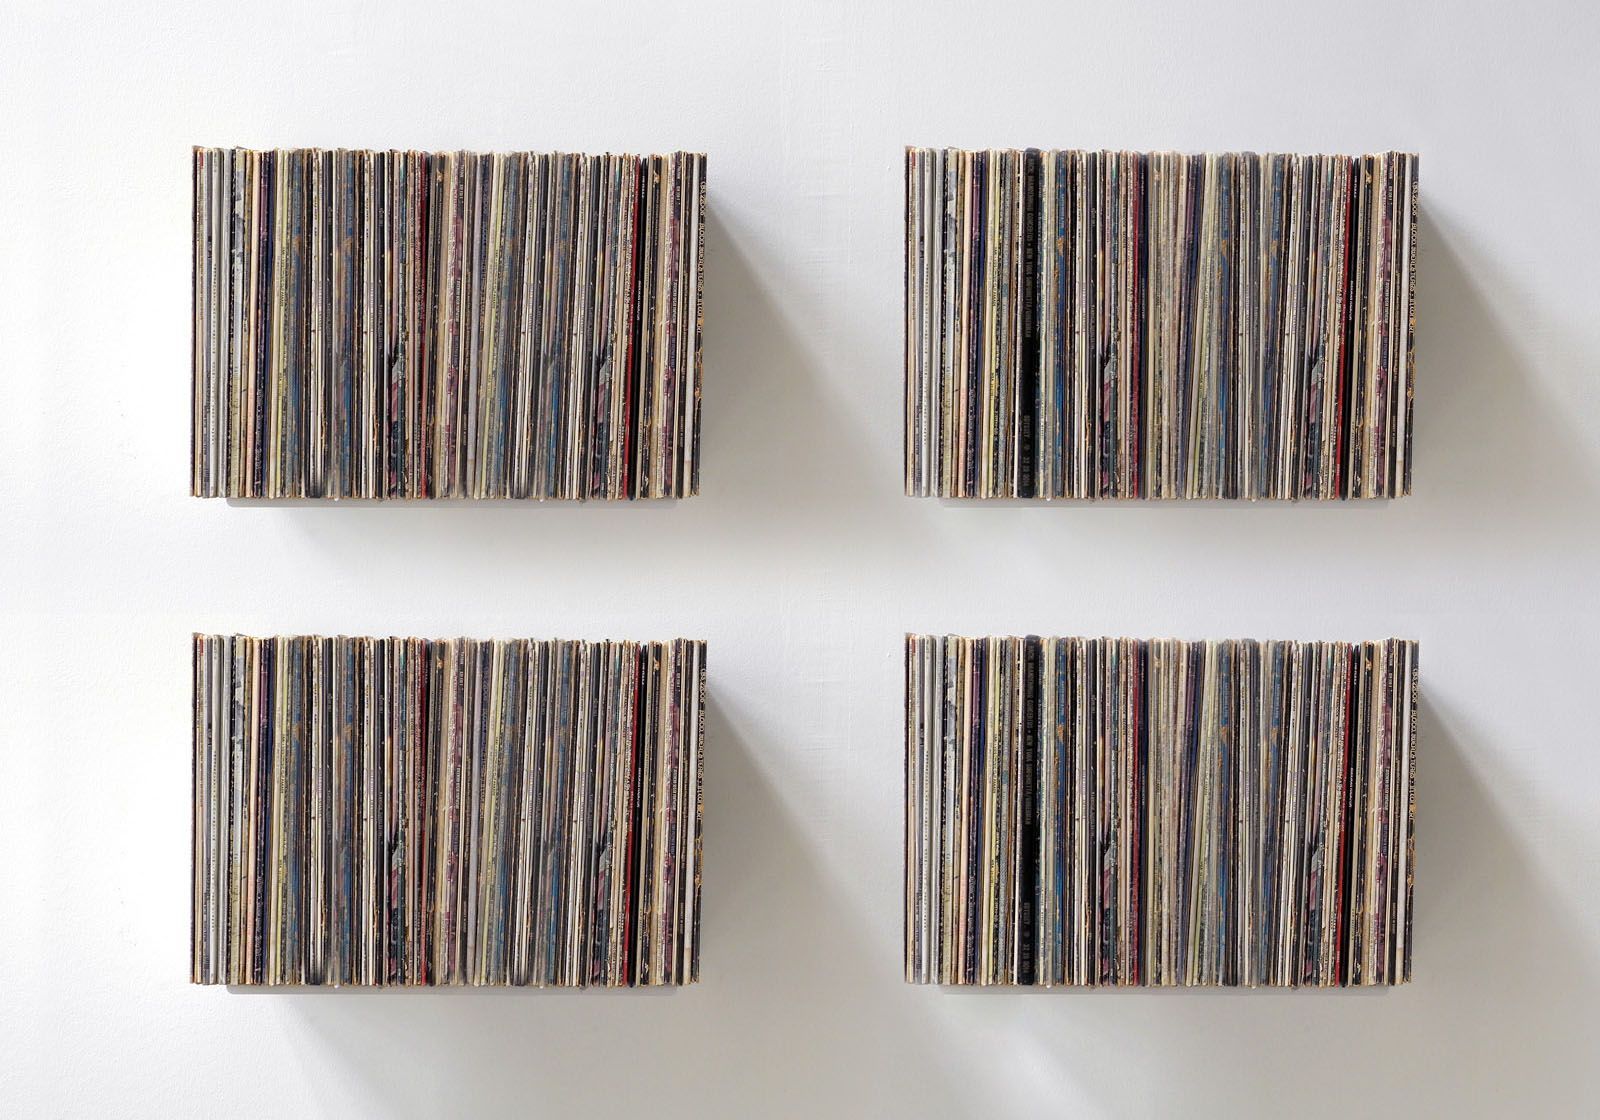 Vinyl Record Storage Shelf